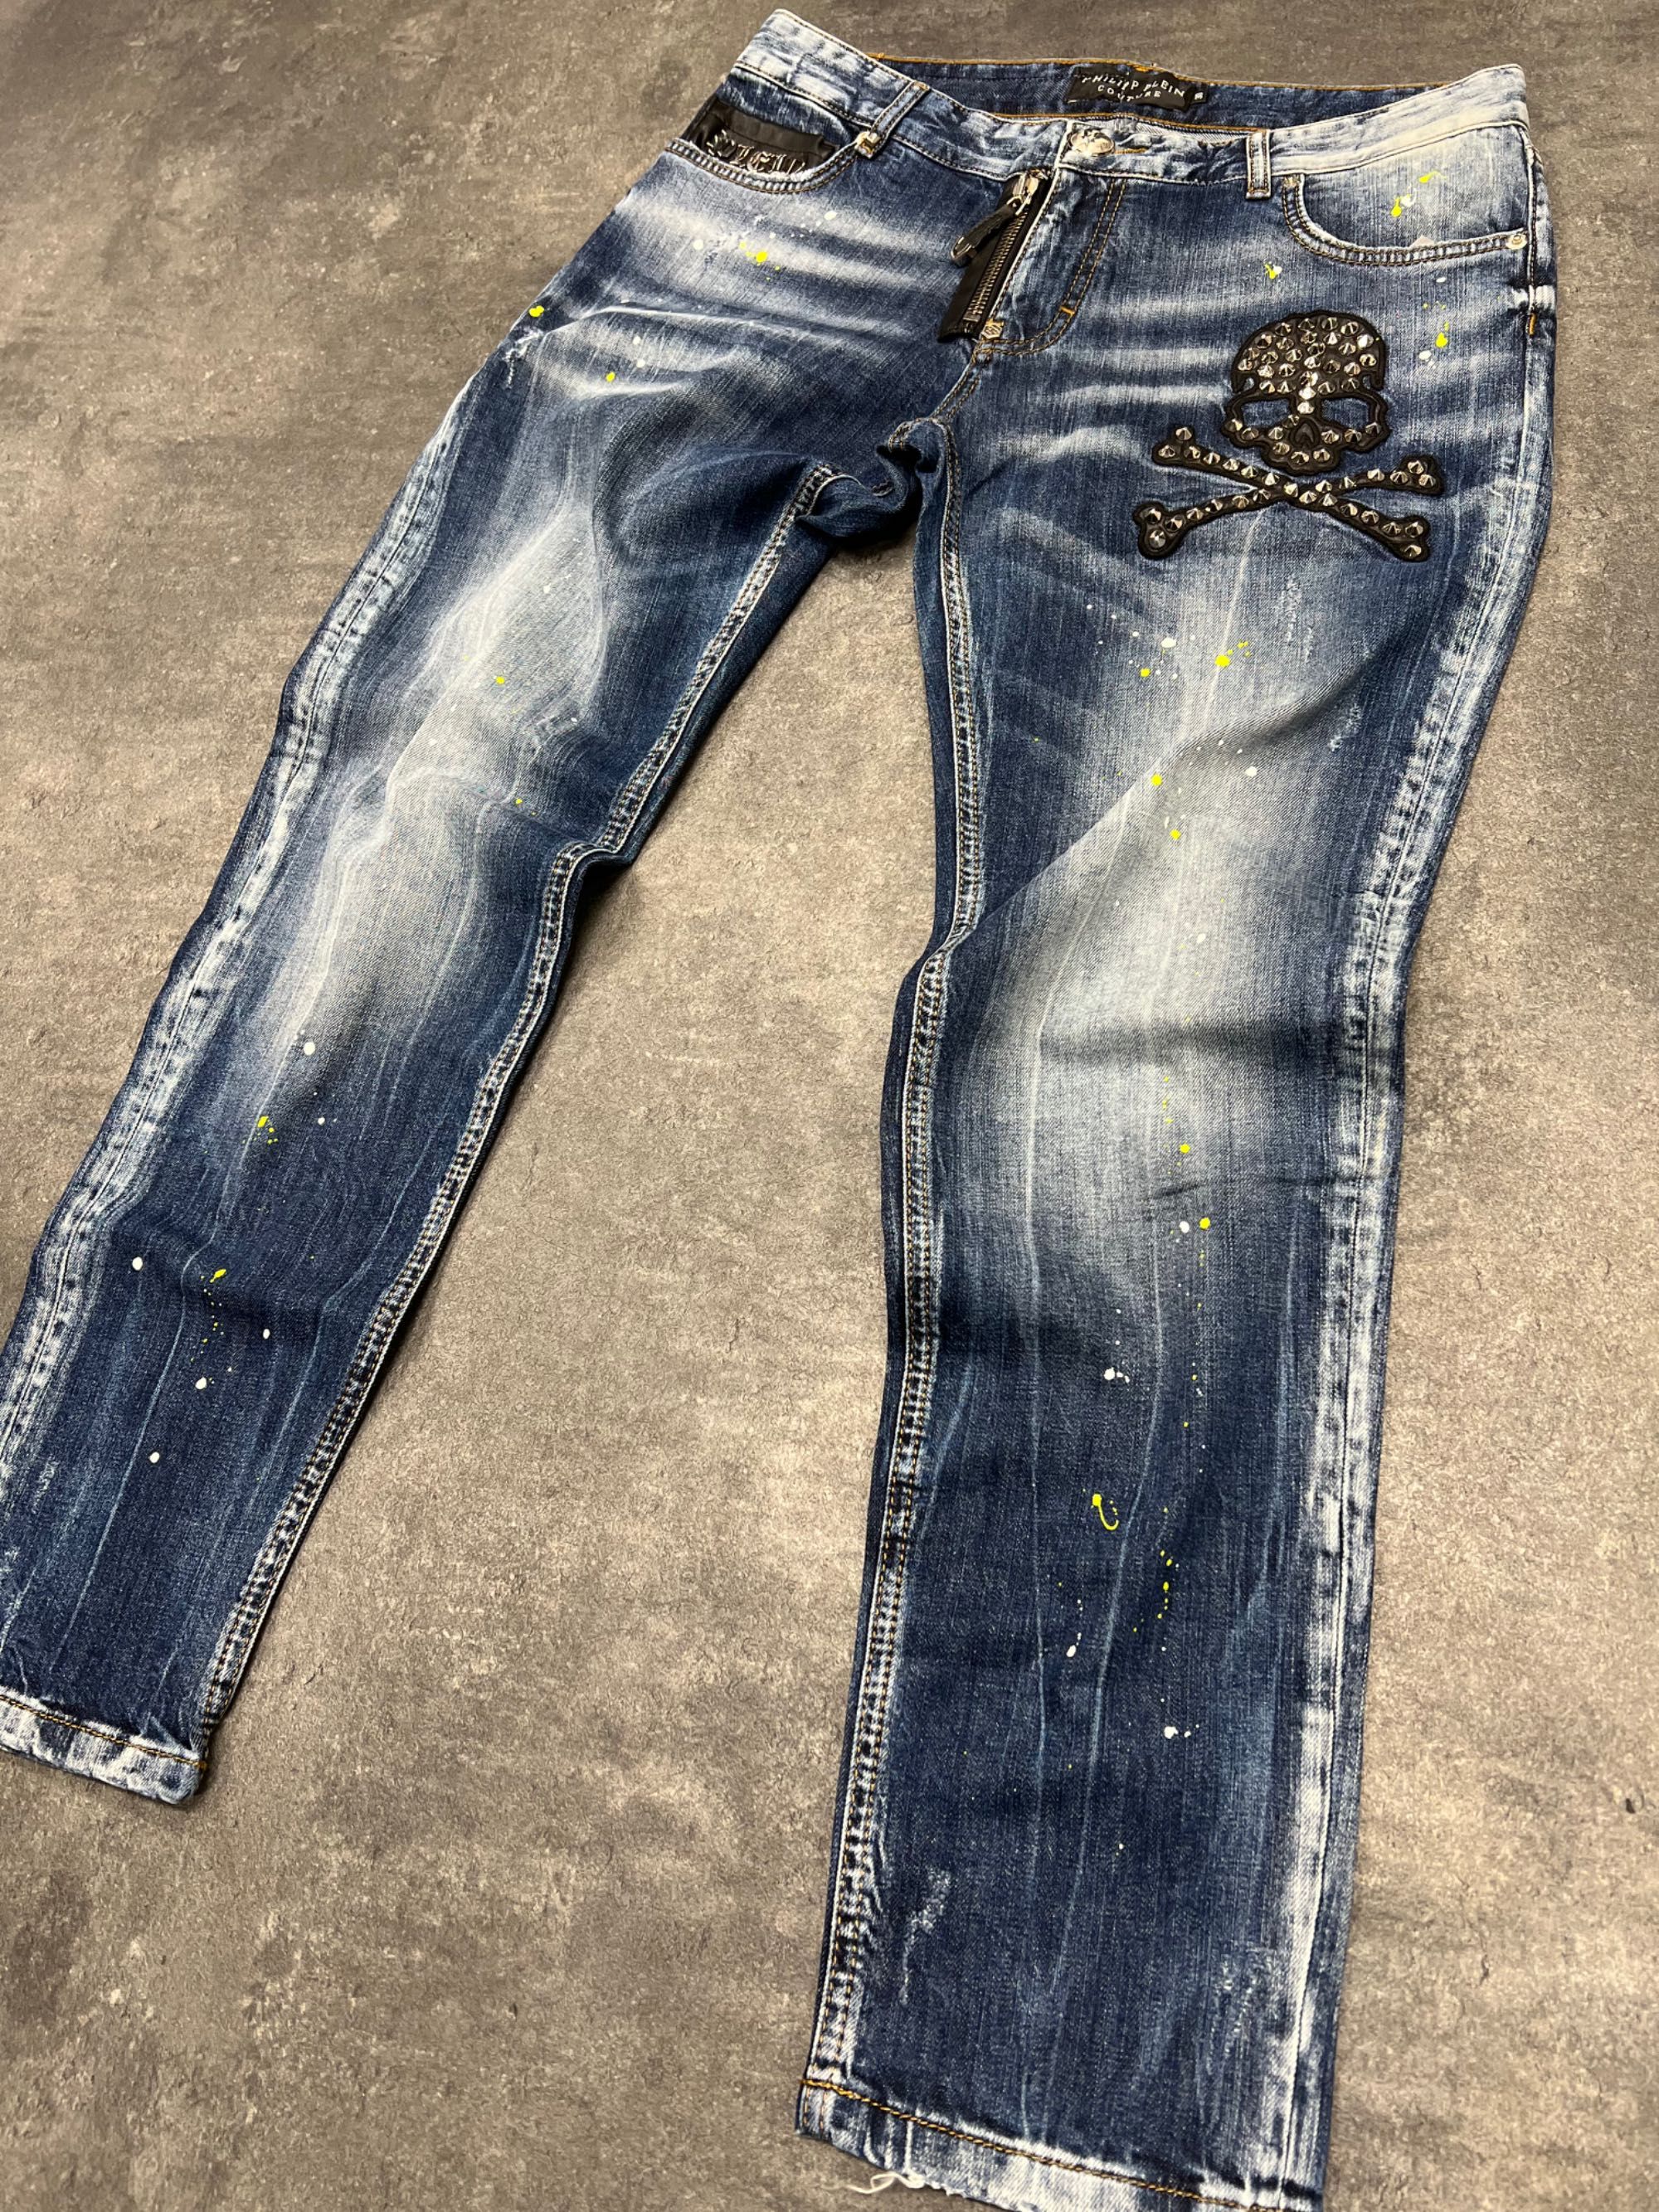 Spodnie jeans philipp plein męskie nity czaszka boyfrend